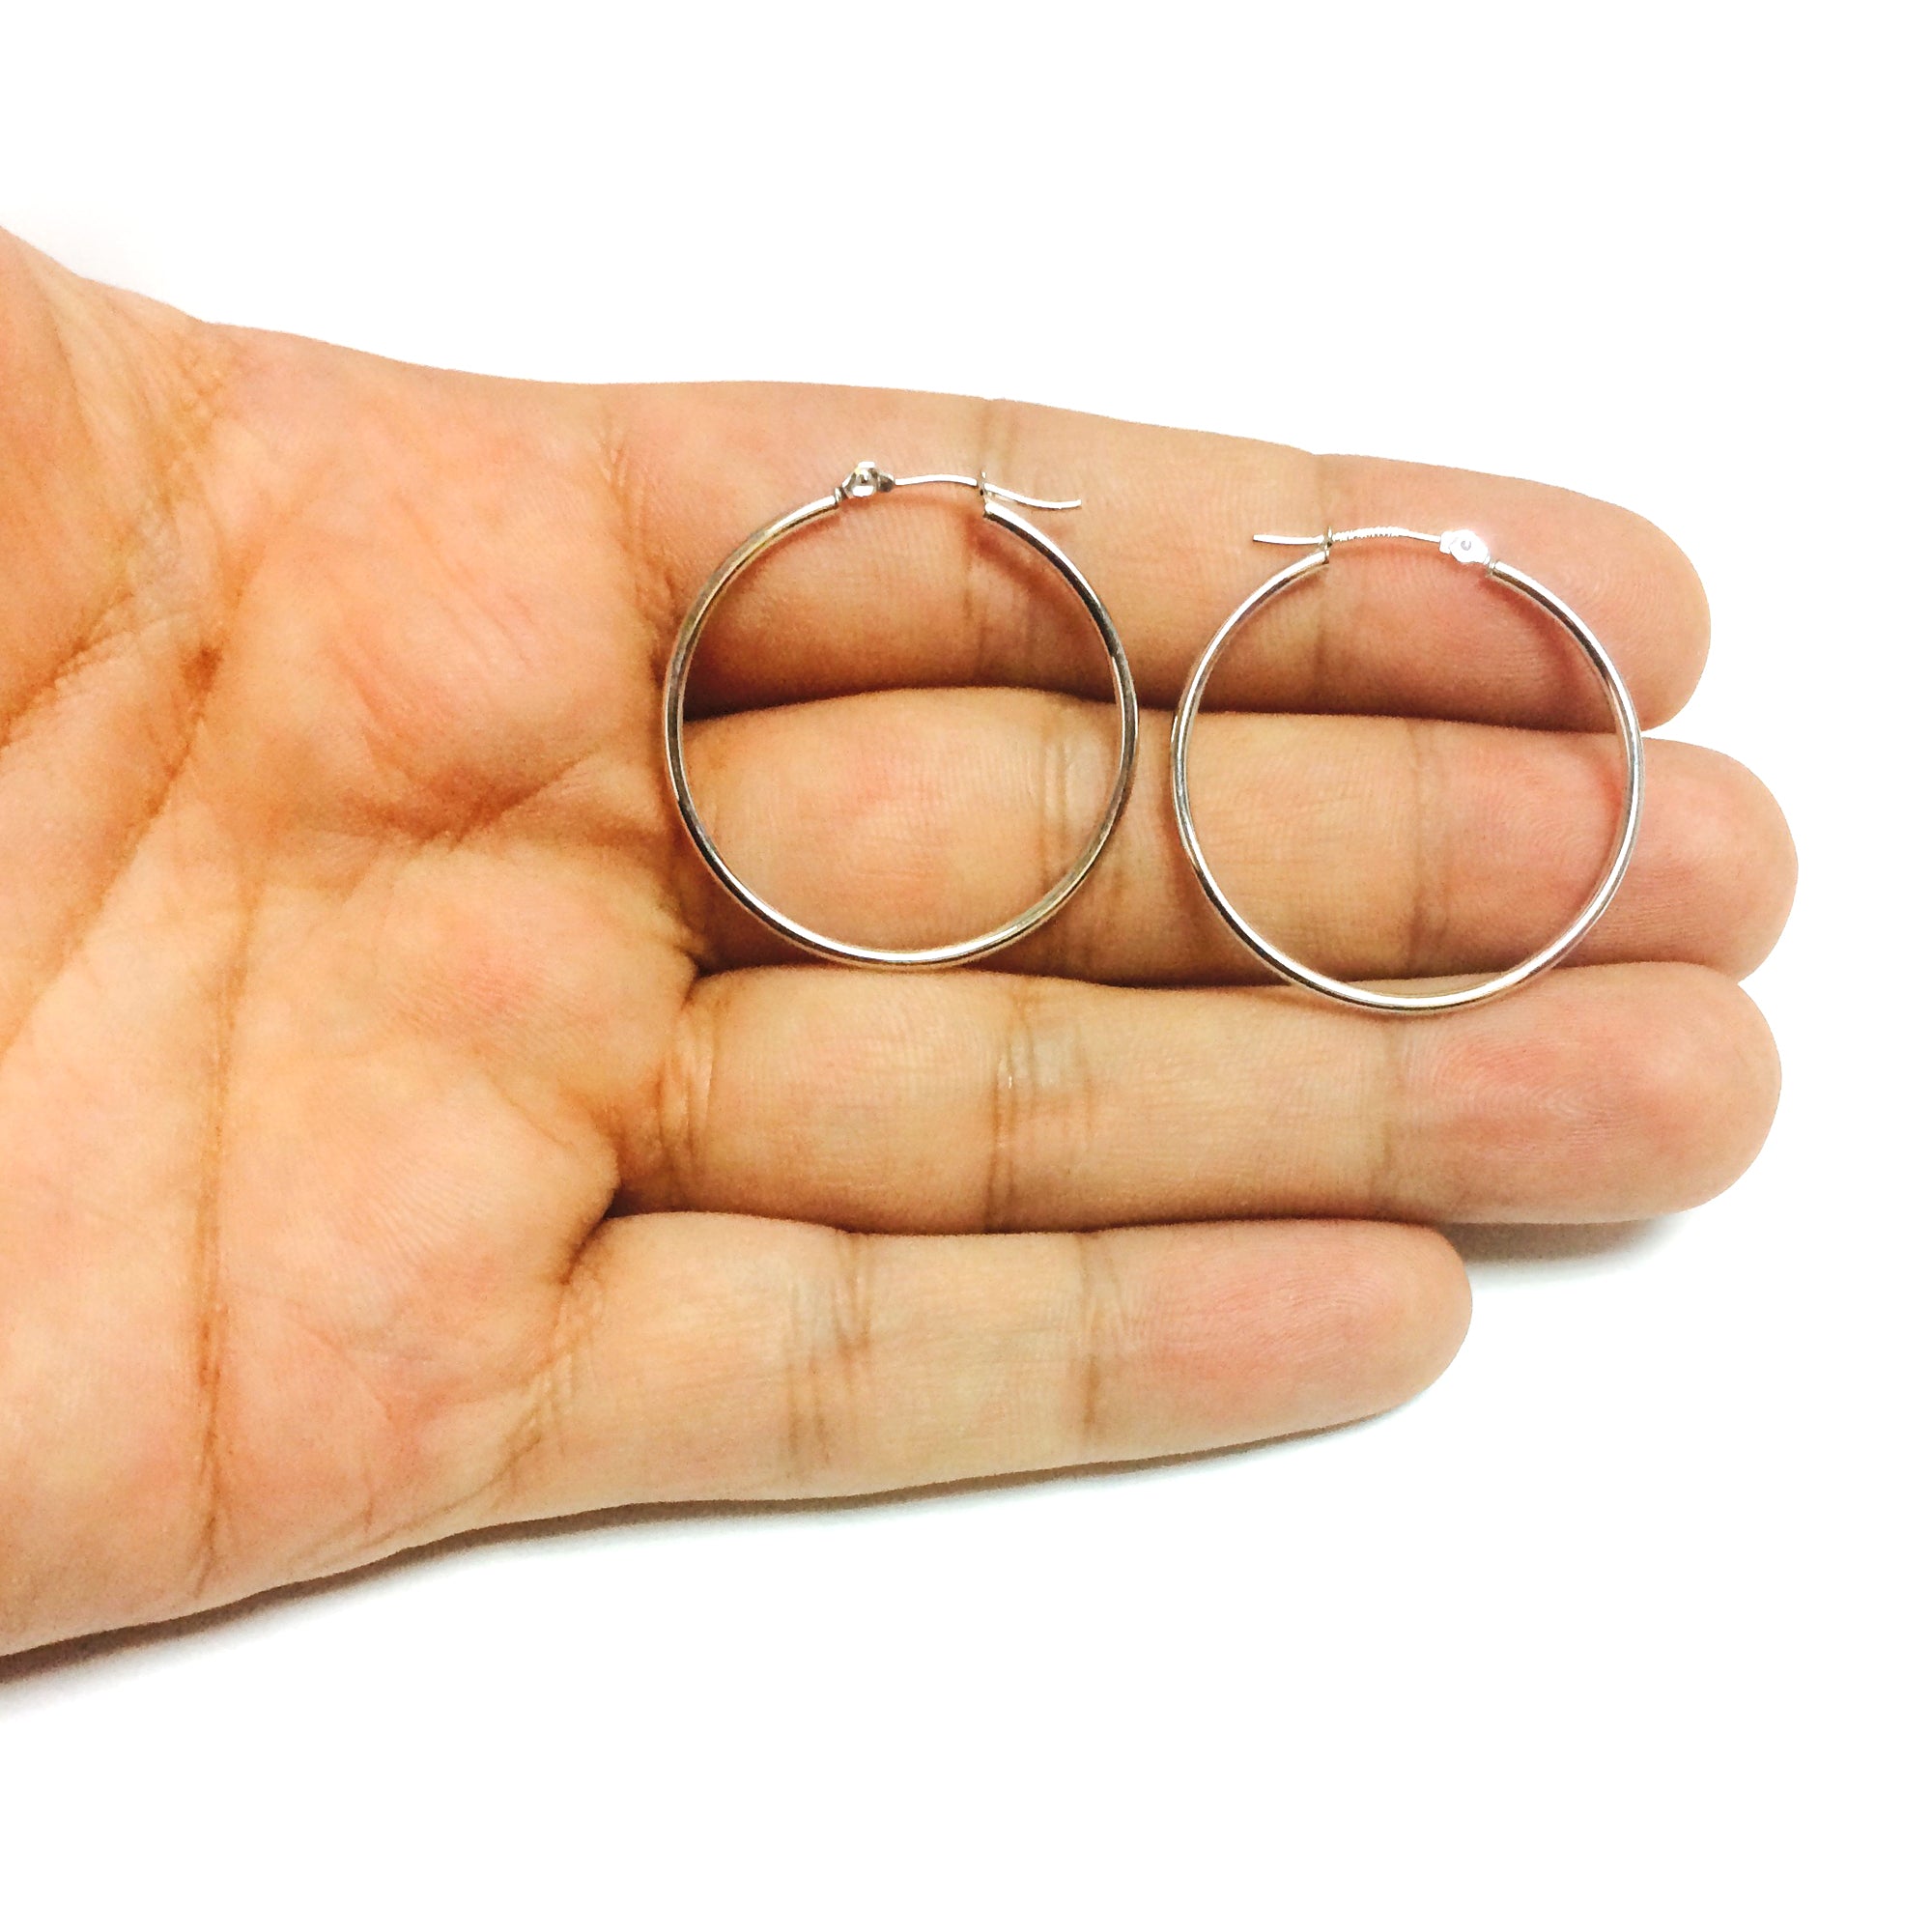 14k White Gold 1.5mm Shiny Round Tube Hoop Earrings fine designer jewelry for men and women